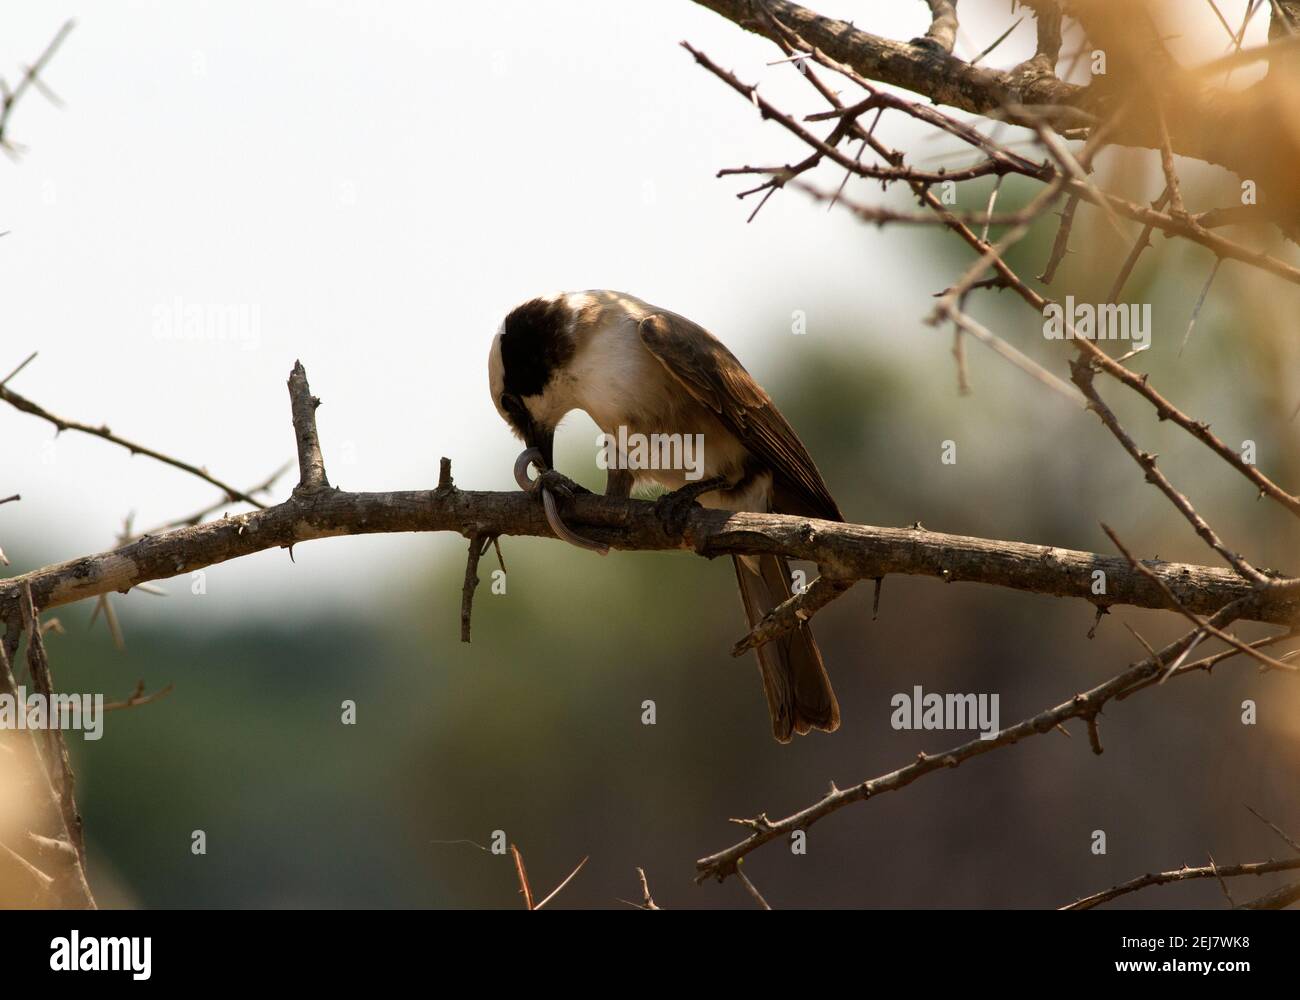 Ein Nördlicher Weißkronenwürger hat eine kleine Schlange gefangen und frisst sie in einem Dornenbaum. Dieses Mitglied der Familie der Garnelen fliegt in Herden umher Stockfoto